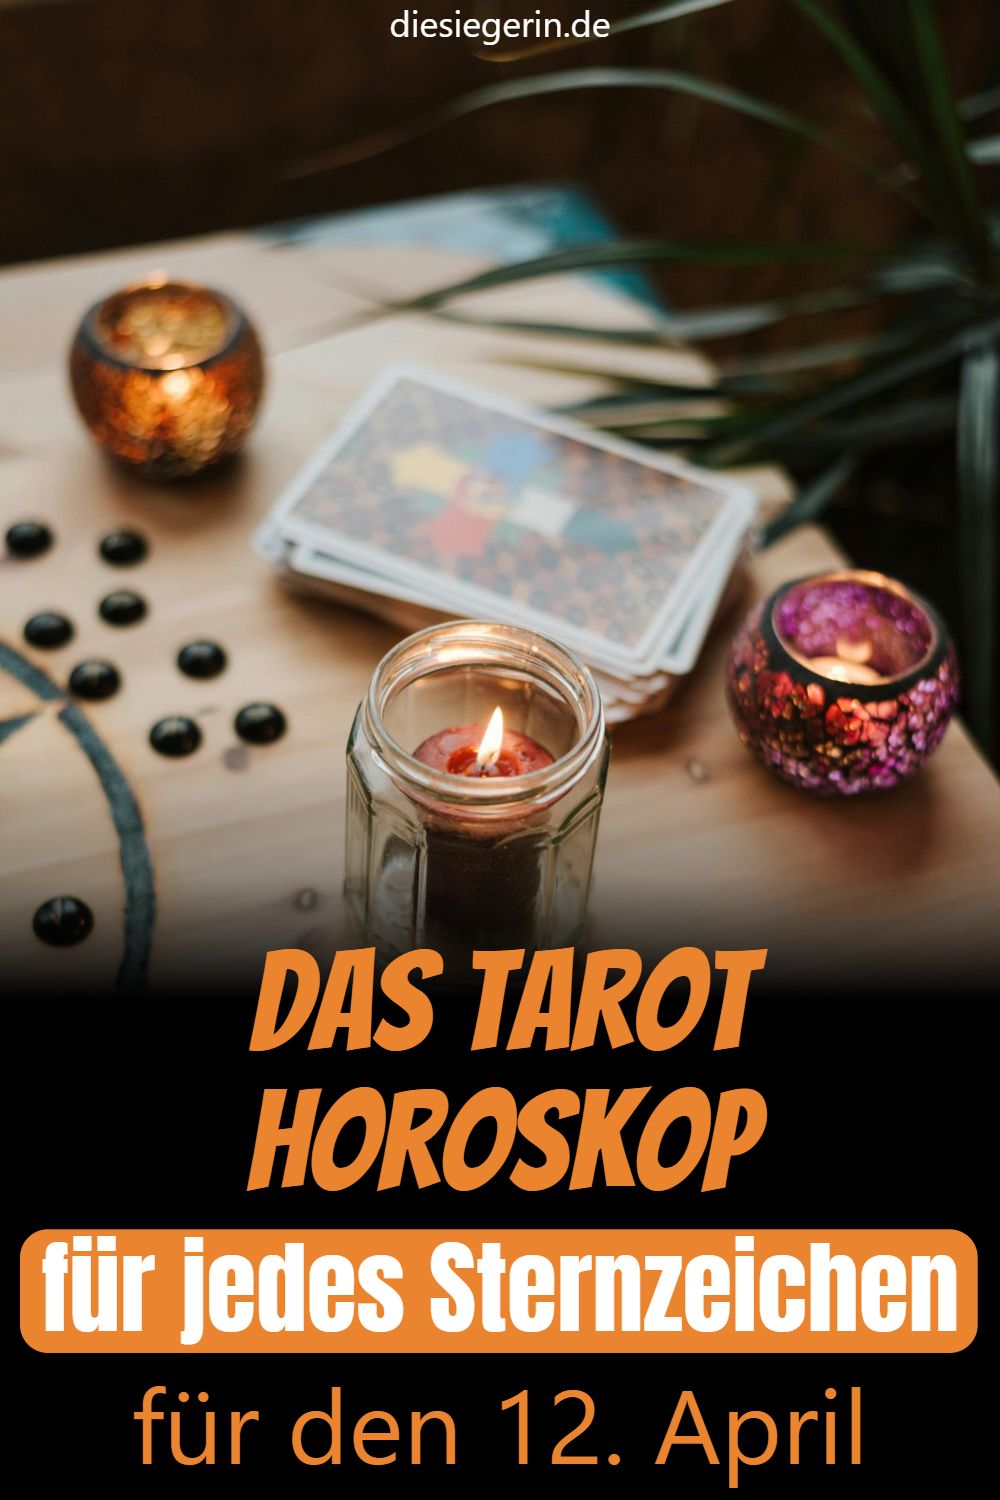 Das Tarot Horoskop für jedes Sternzeichen für den 12. April